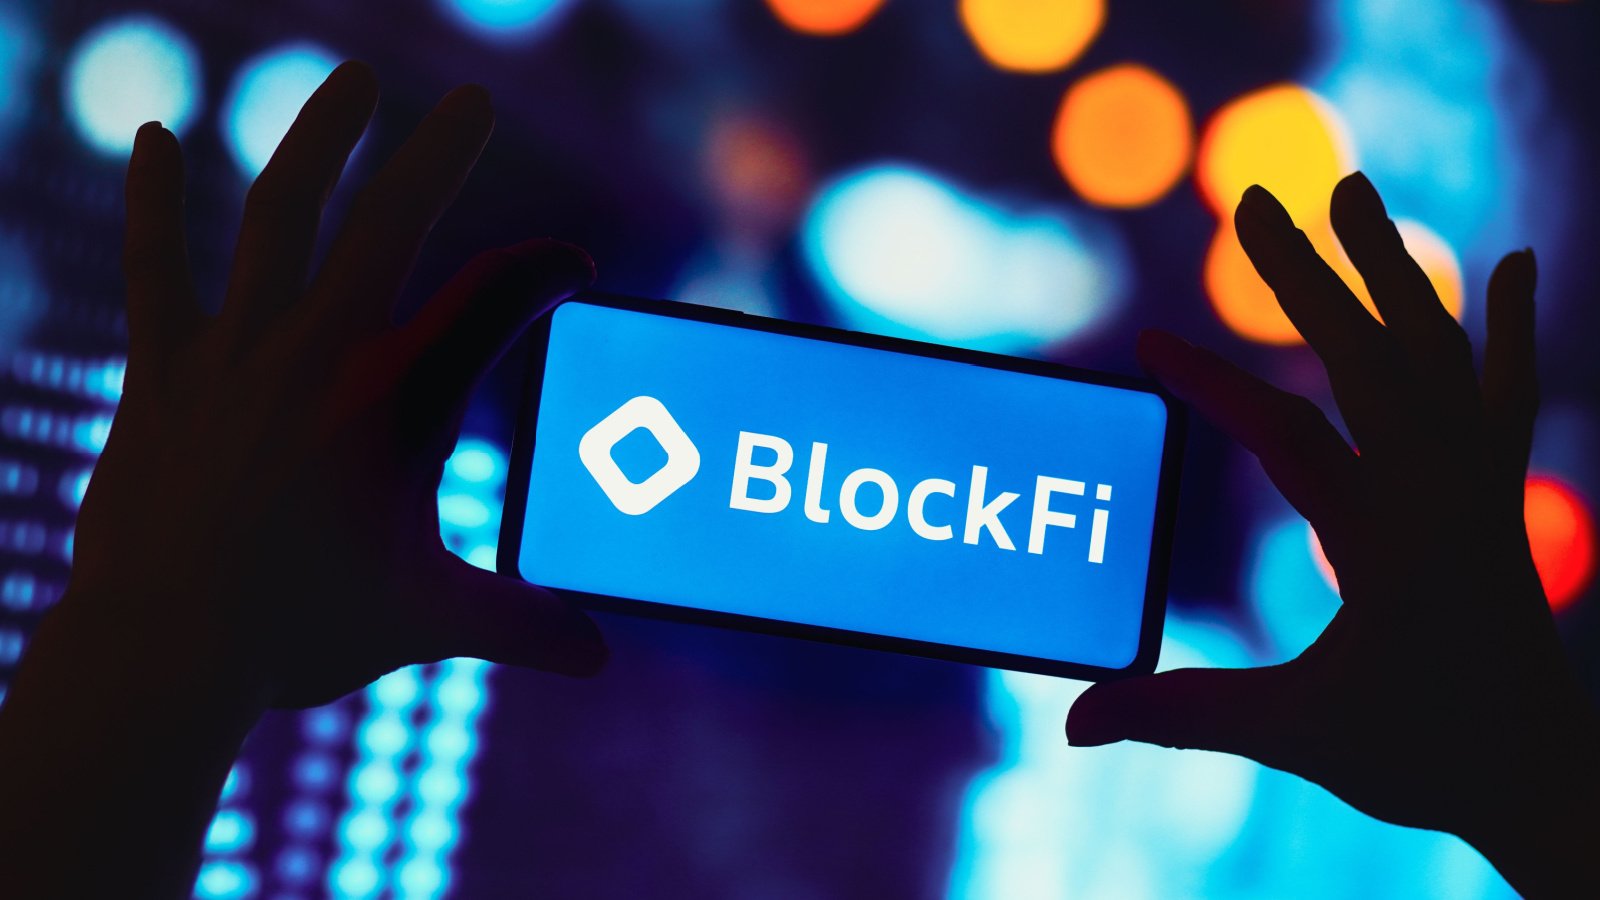 【速報】BlockFi、破産からの再生計画を発表